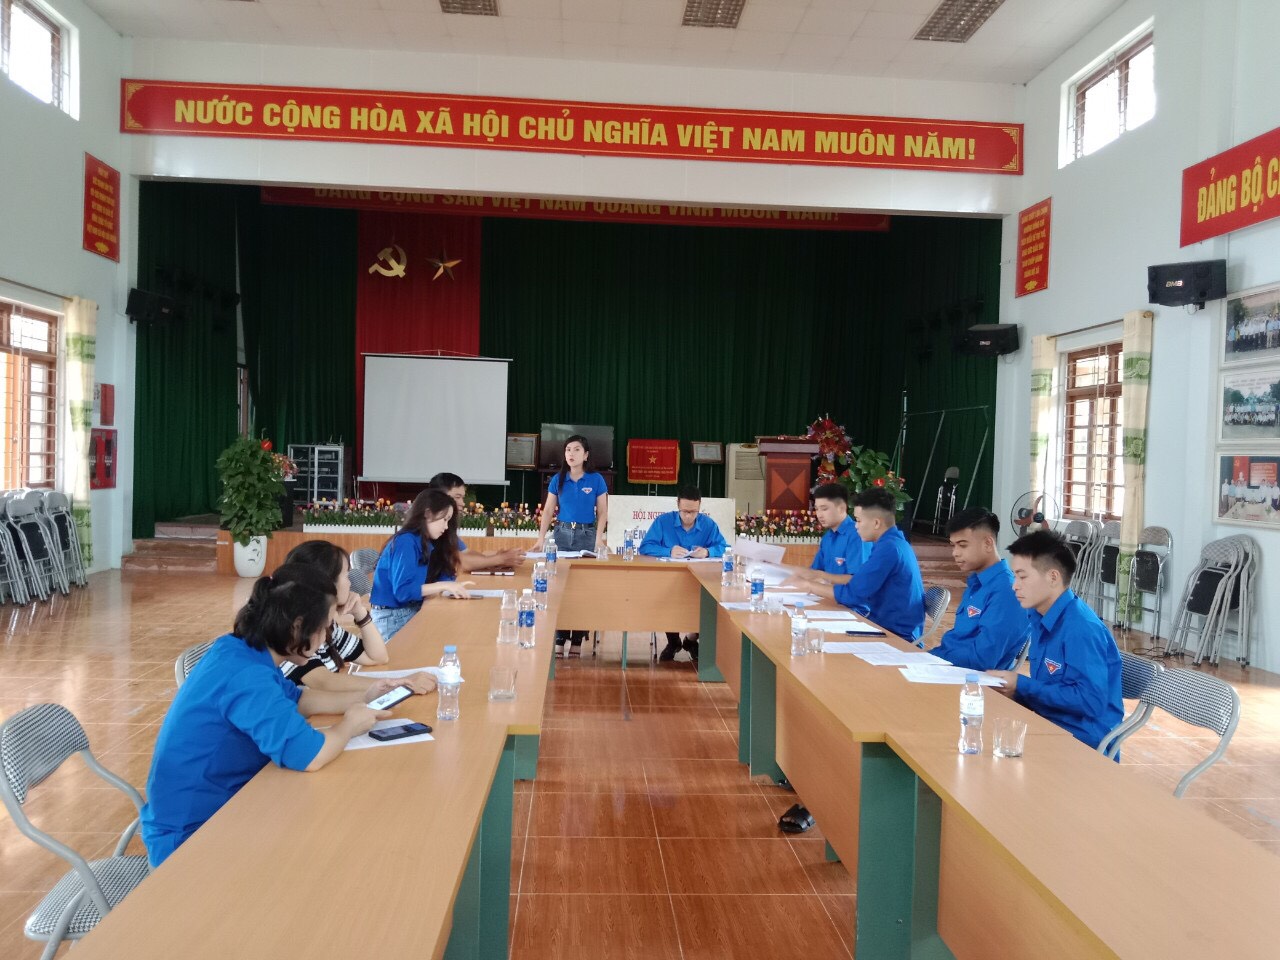 Đ/c Hà Thị Hồng Vân - Phó bí thư huyện đoàn phát biểu kết luận buổi làm việc